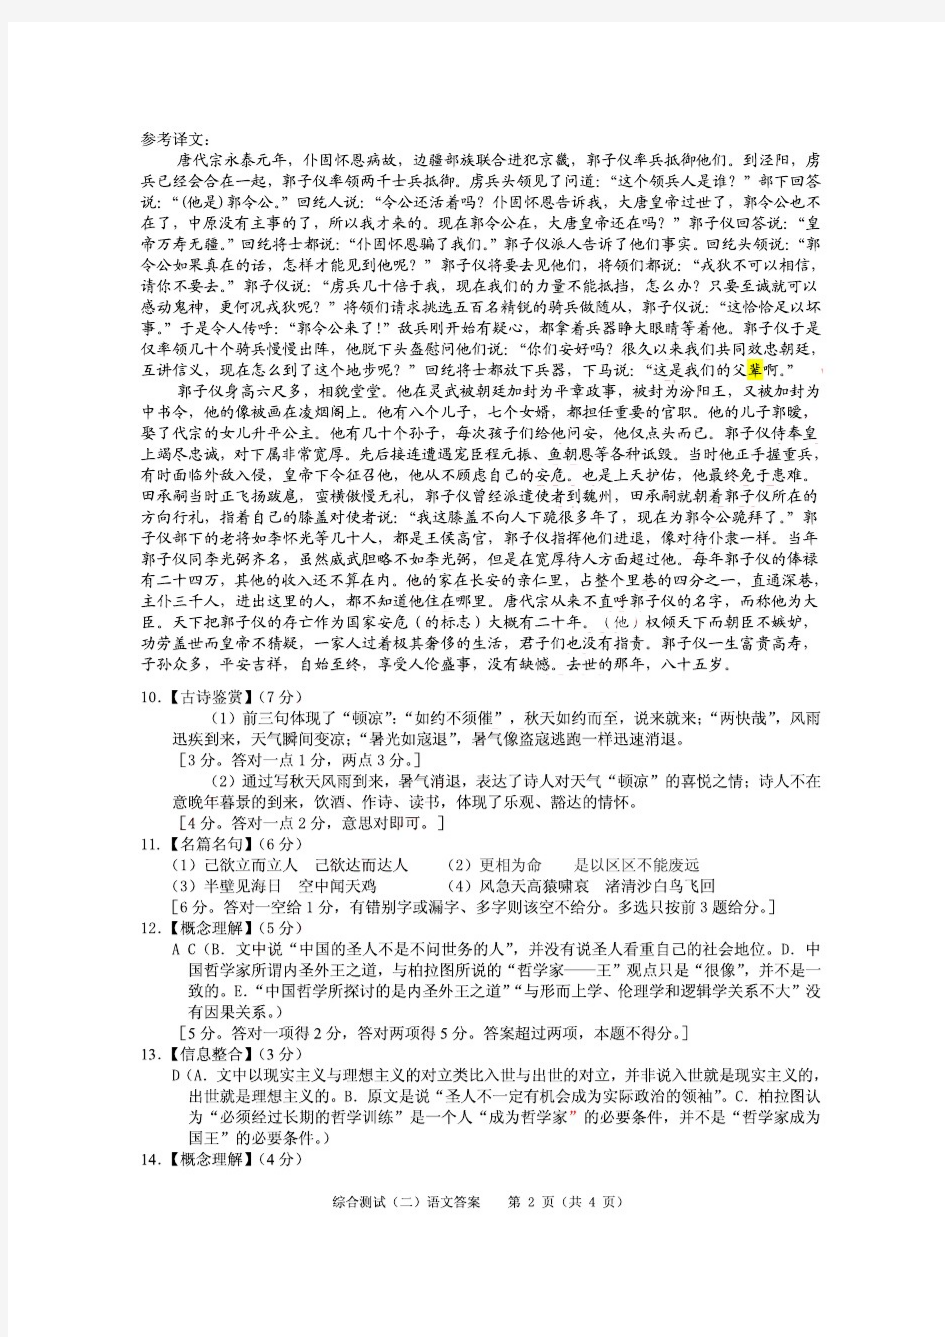 2015年广州市普通高中毕业班综合测试(二)语文参考答案及评分标准(无水印版)